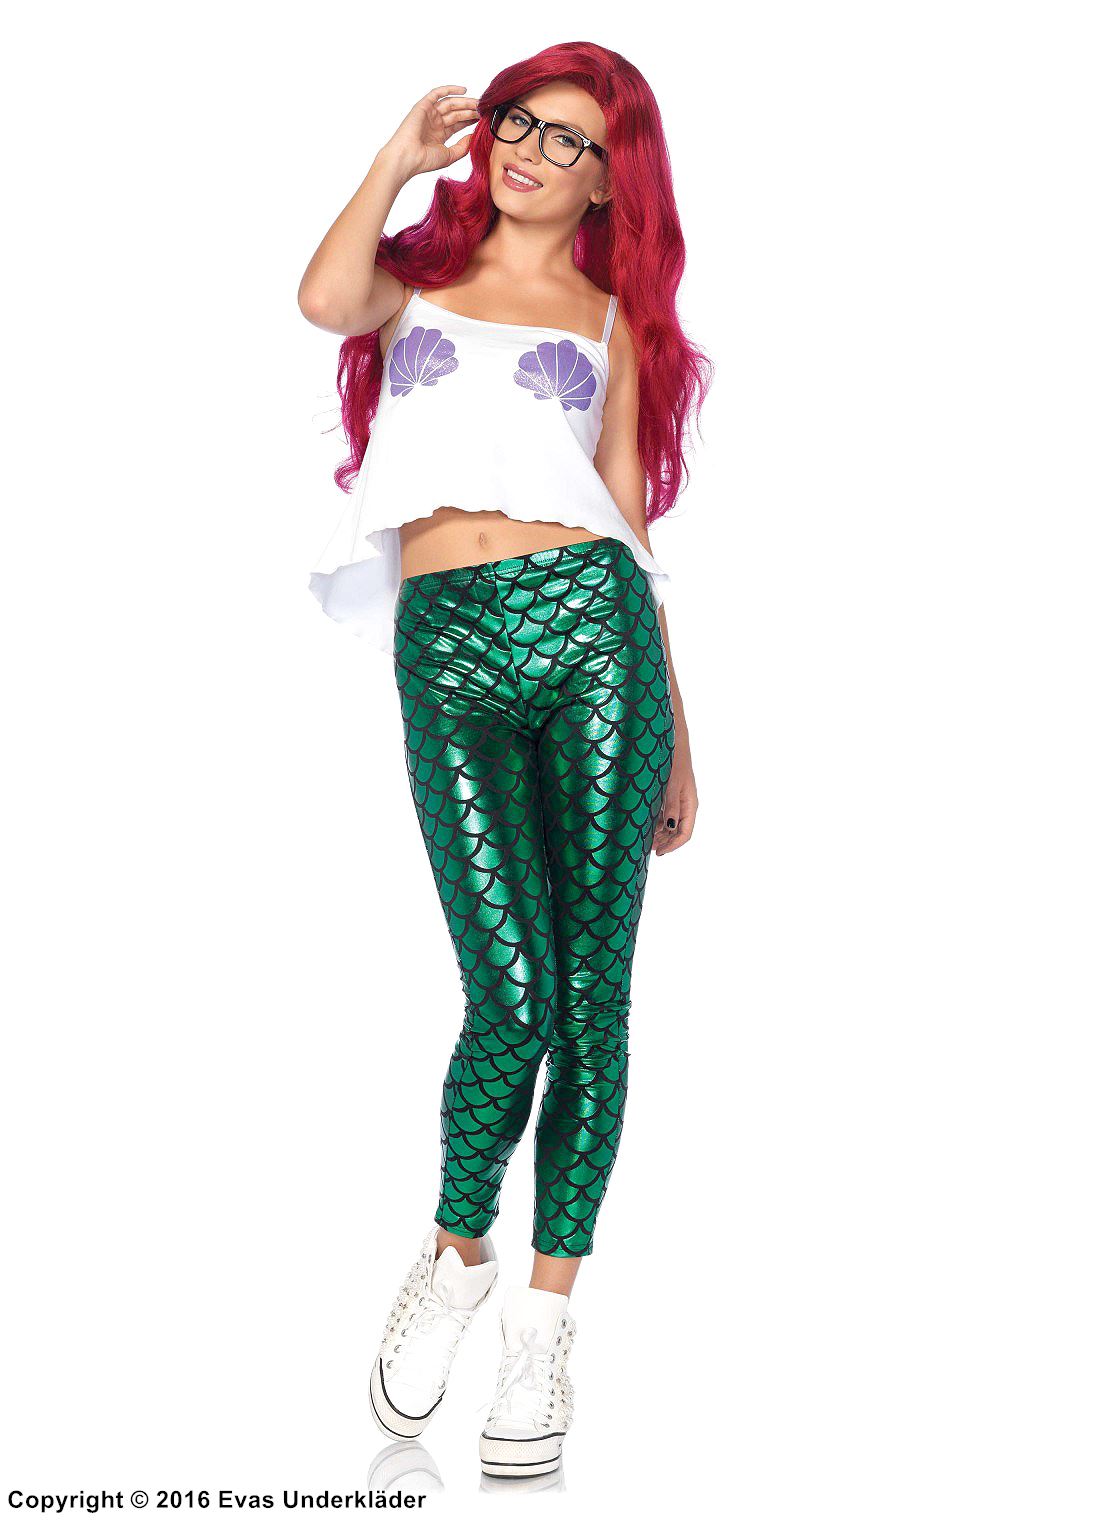 Mermaid, costume top and leggings, fish scales